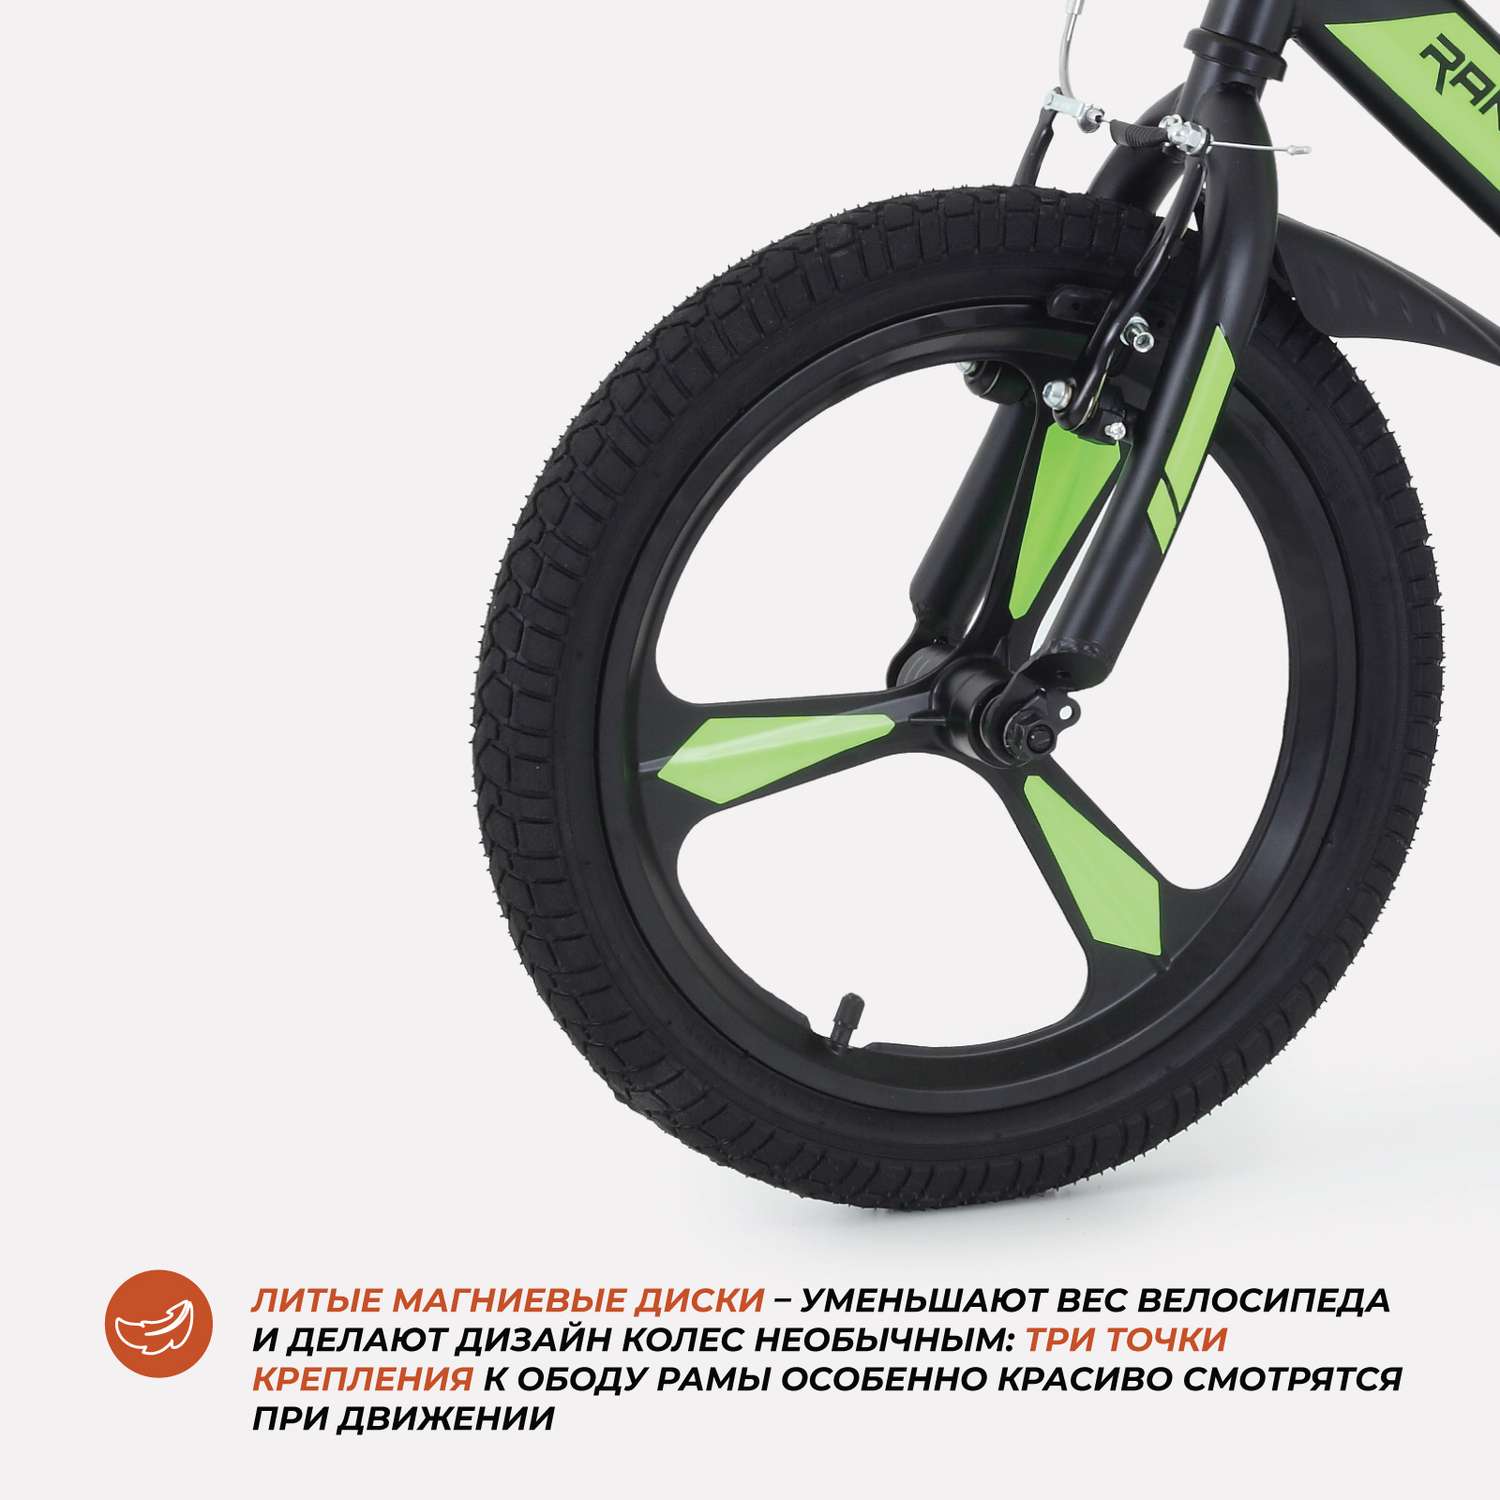 Велосипед 2-х колесный детский Rant Eclipse черно-зеленый 16 - фото 6